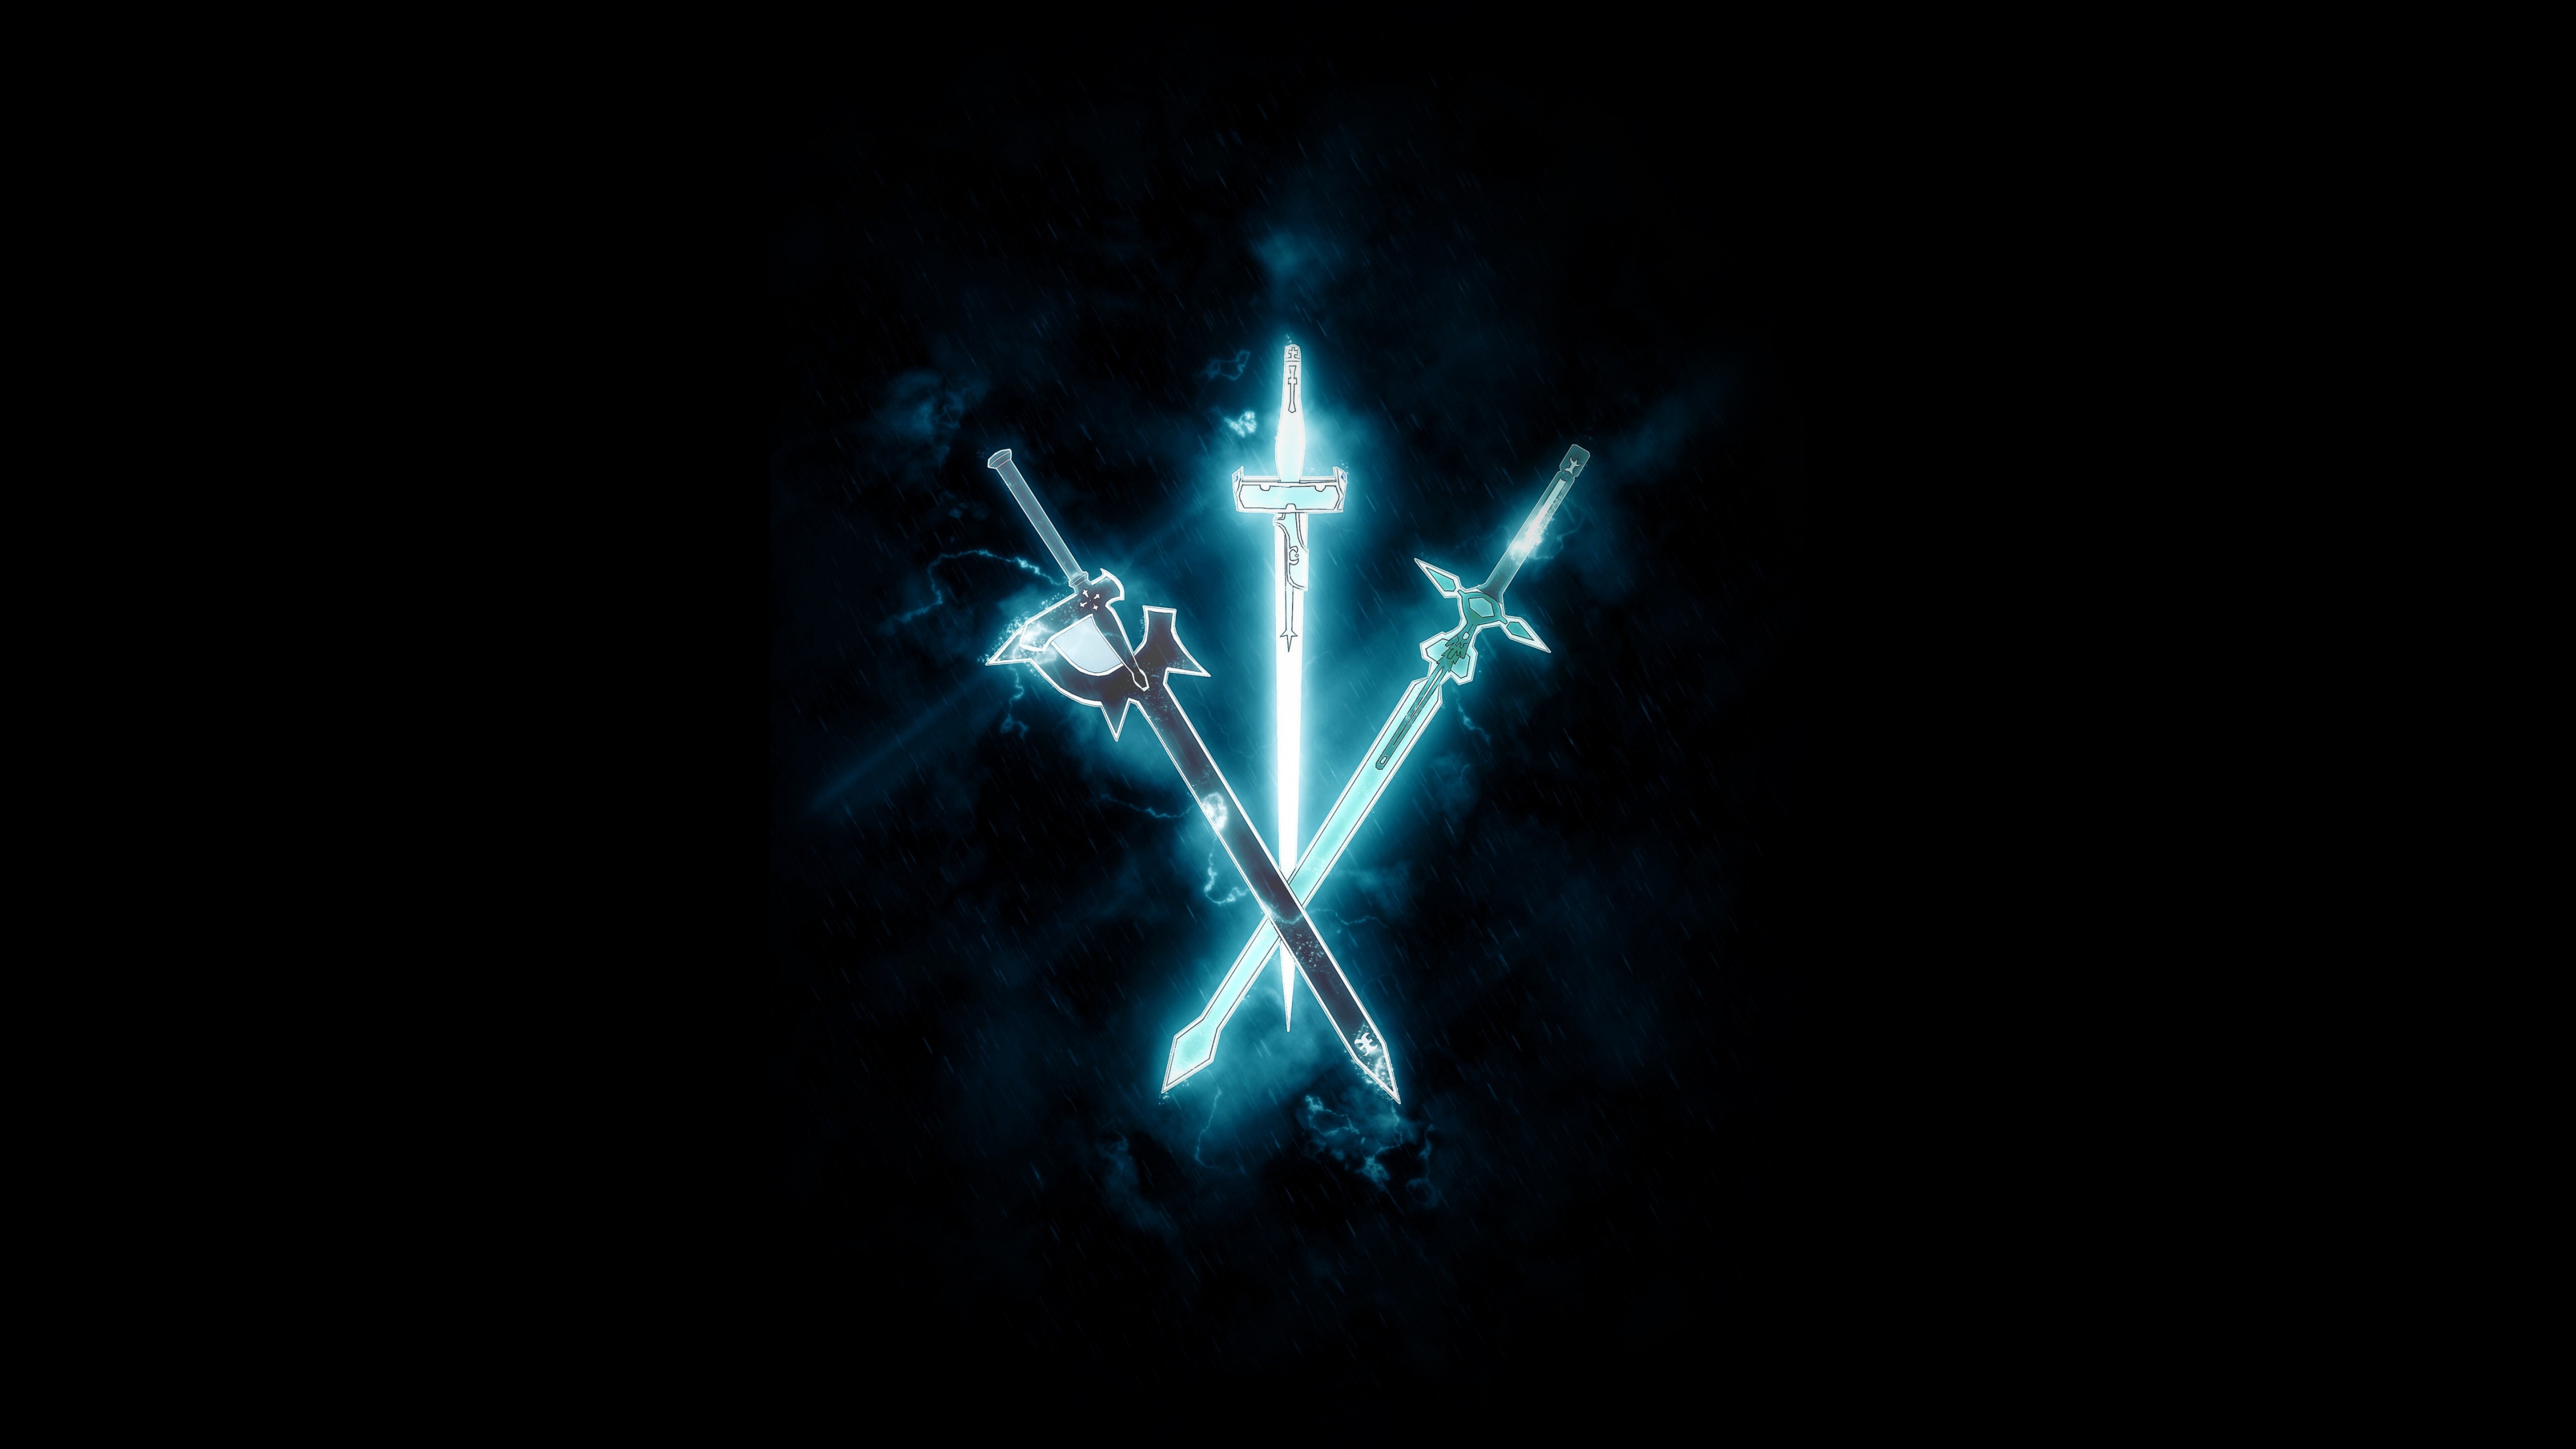 Hình nền Sword Art Online 4K kết hợp với chiếc kiếm Elucidator đầy uy lực chắc chắn là điều mà bạn không thể bỏ qua. Được thiết kế với màu đen/tối chất lượng, bức hình nền này sẽ mang đến cảm giác mạnh mẽ và uy nghi.